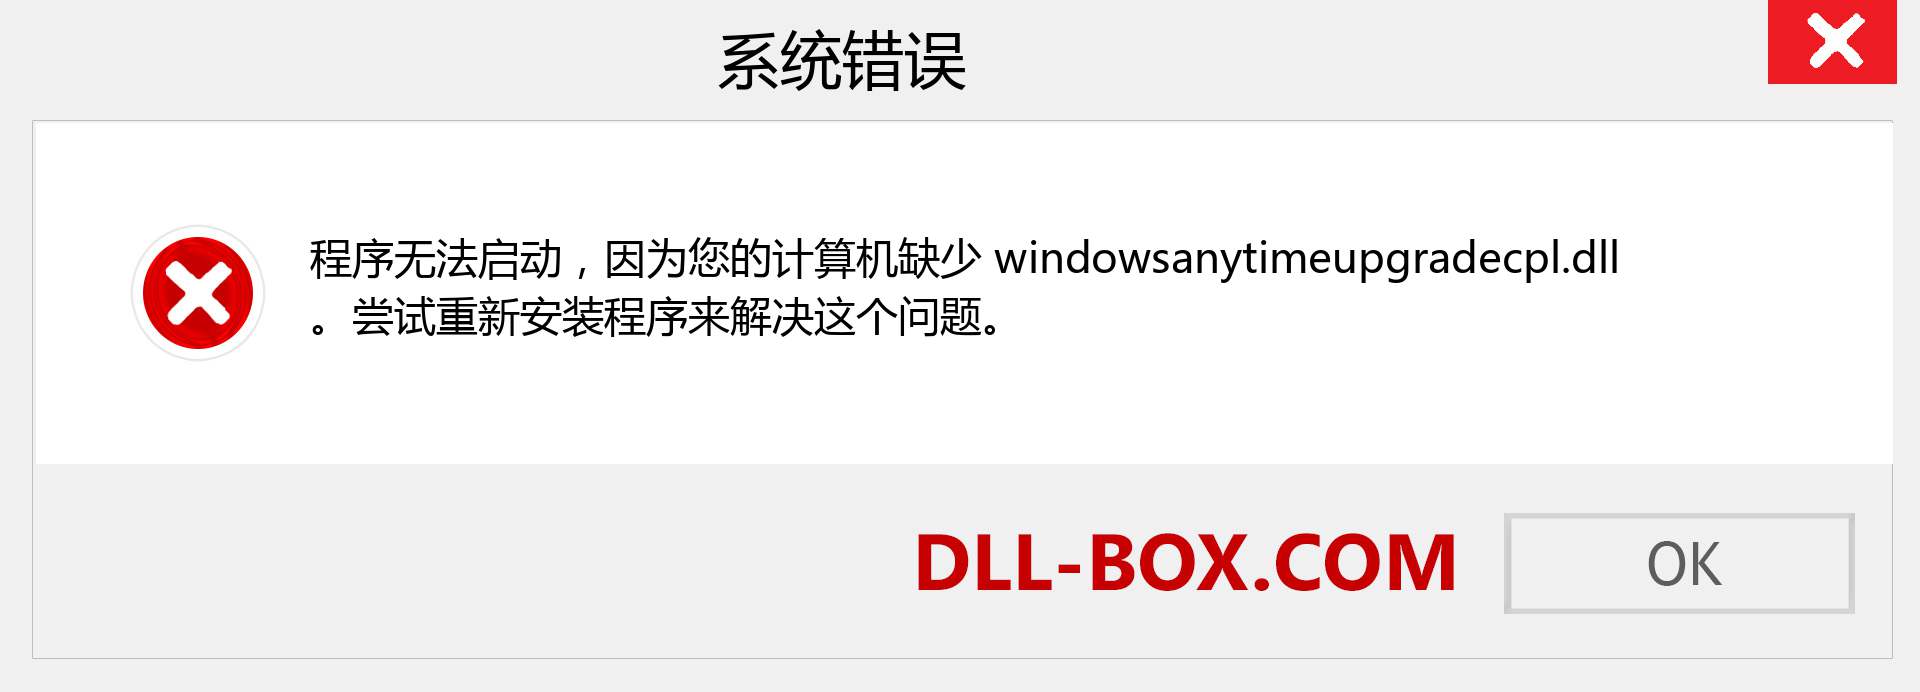 windowsanytimeupgradecpl.dll 文件丢失？。 适用于 Windows 7、8、10 的下载 - 修复 Windows、照片、图像上的 windowsanytimeupgradecpl dll 丢失错误